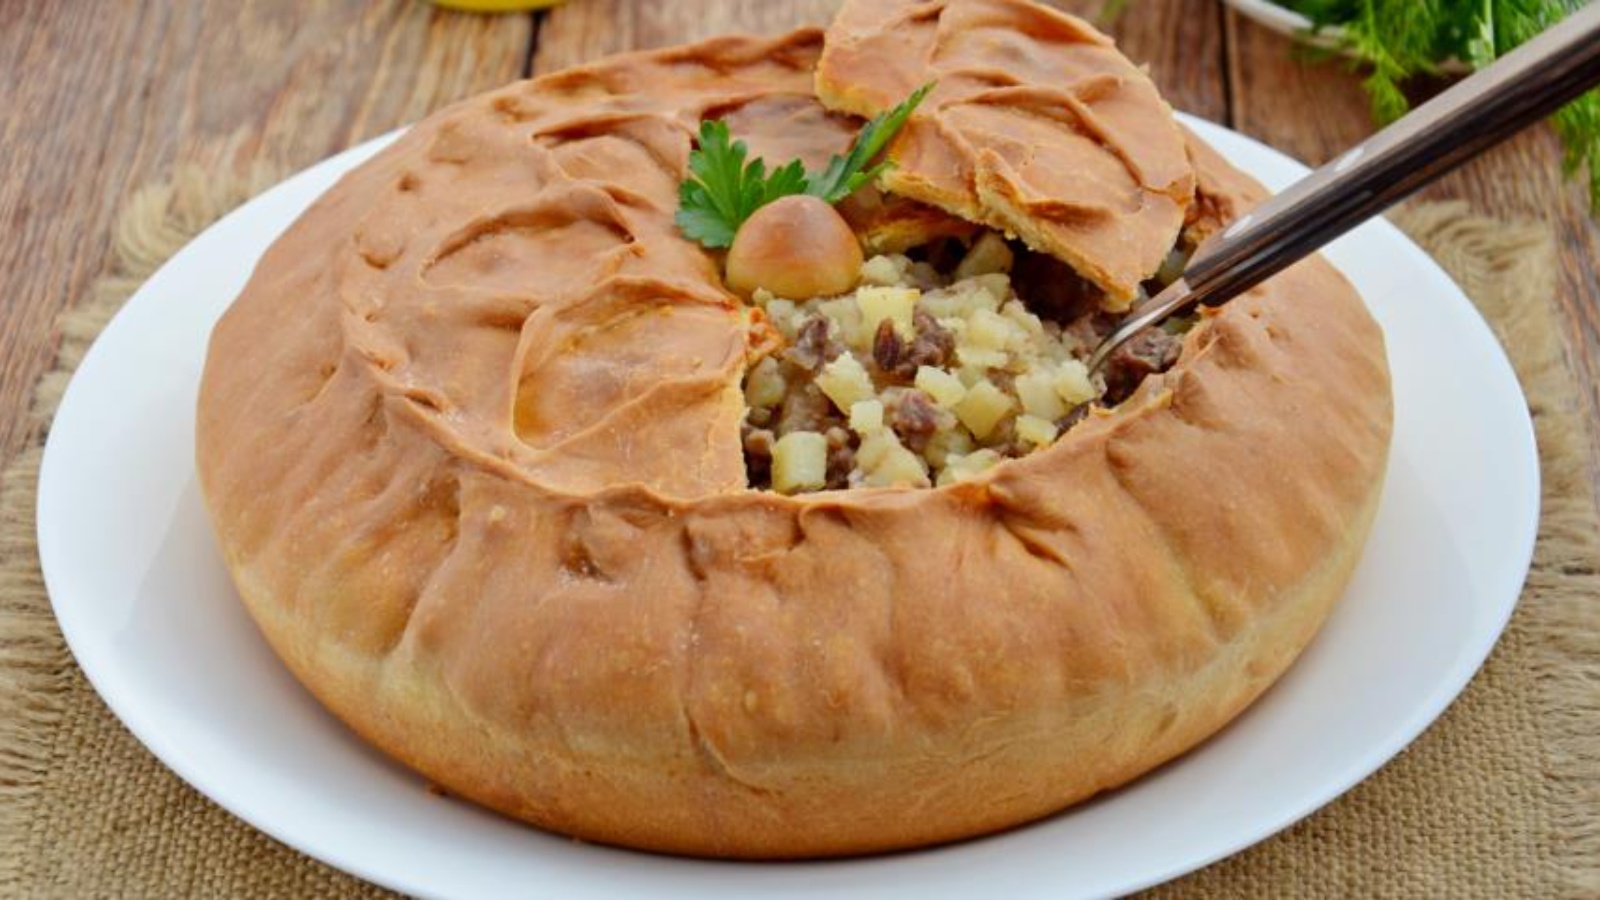 Зур бэлиш татарский национальный пирог пошаговый рецепт с фото